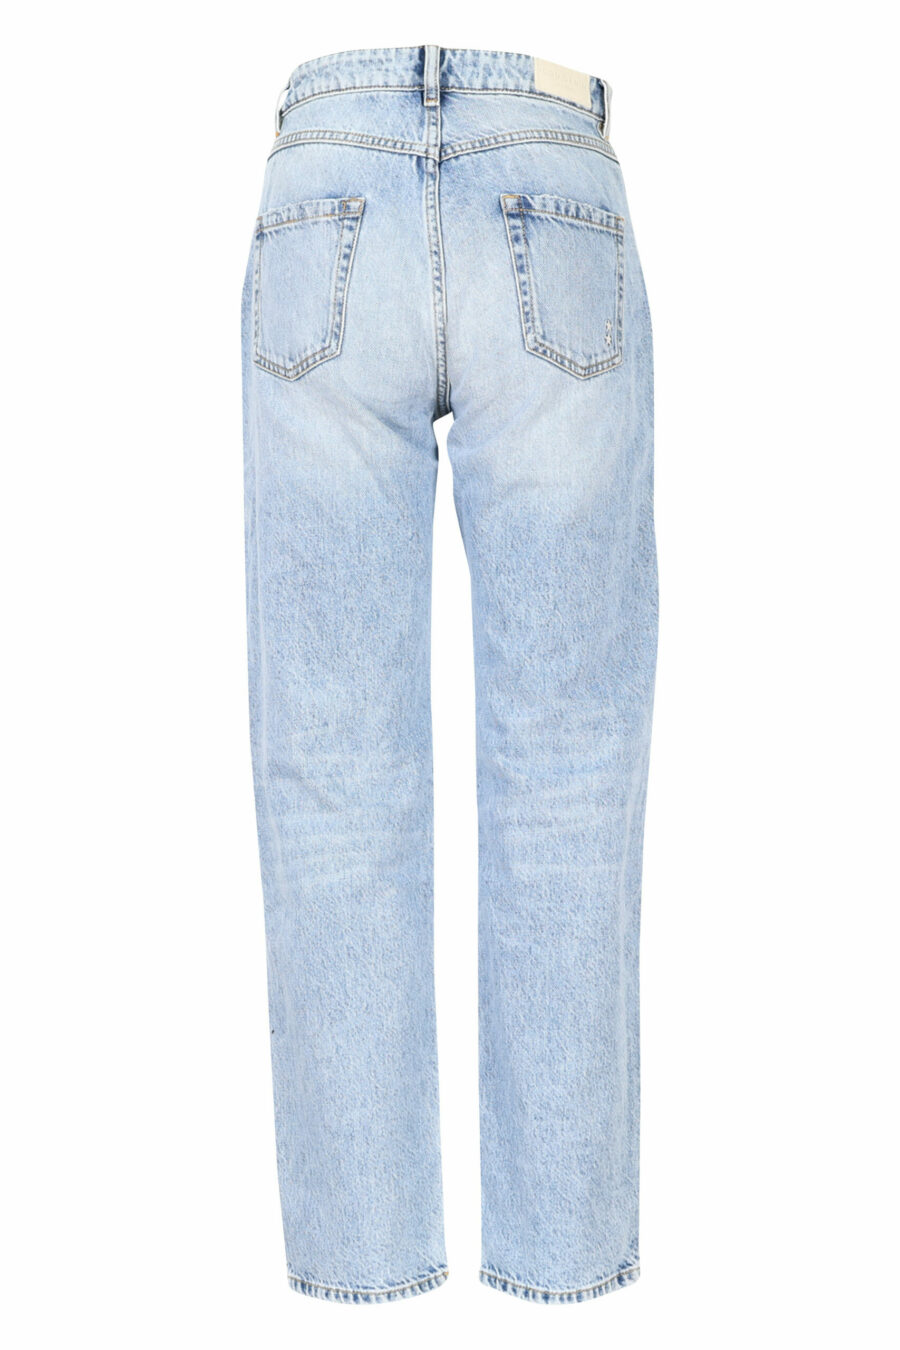 Pantalon en denim bleu "bella" avec minirotos - 8052691165867 2 échelles